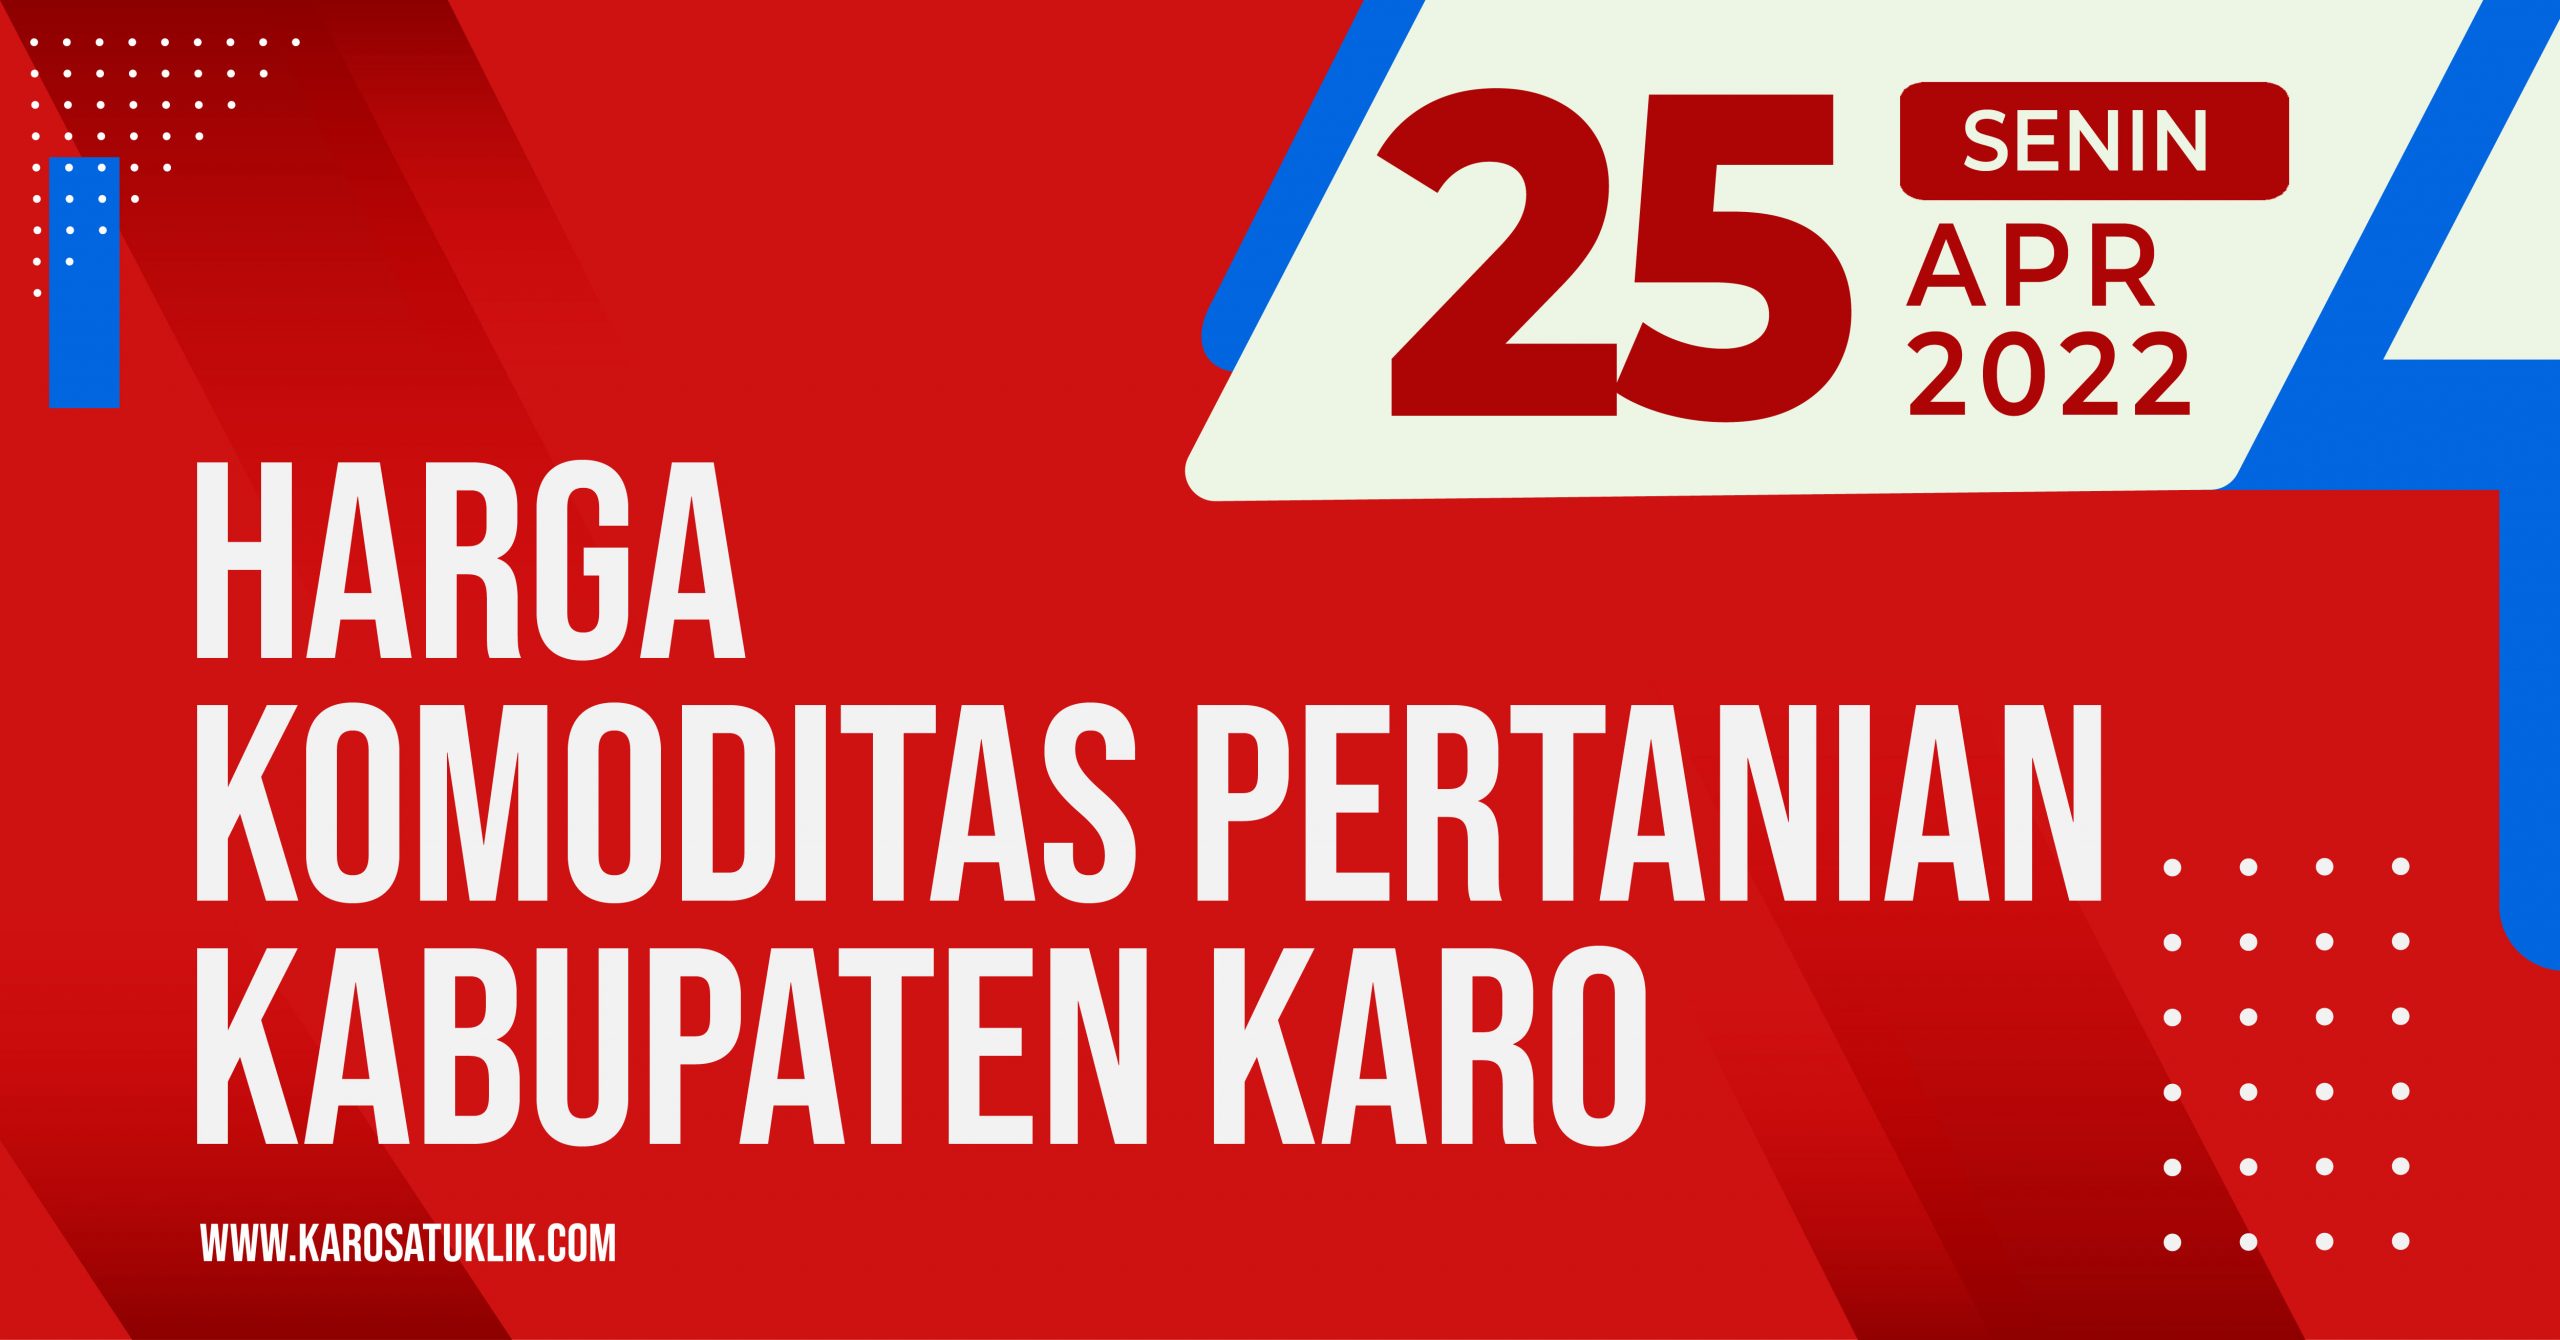 Daftar Harga Komoditas Pertanian Kabupaten Karo, Senin 25 April 2022